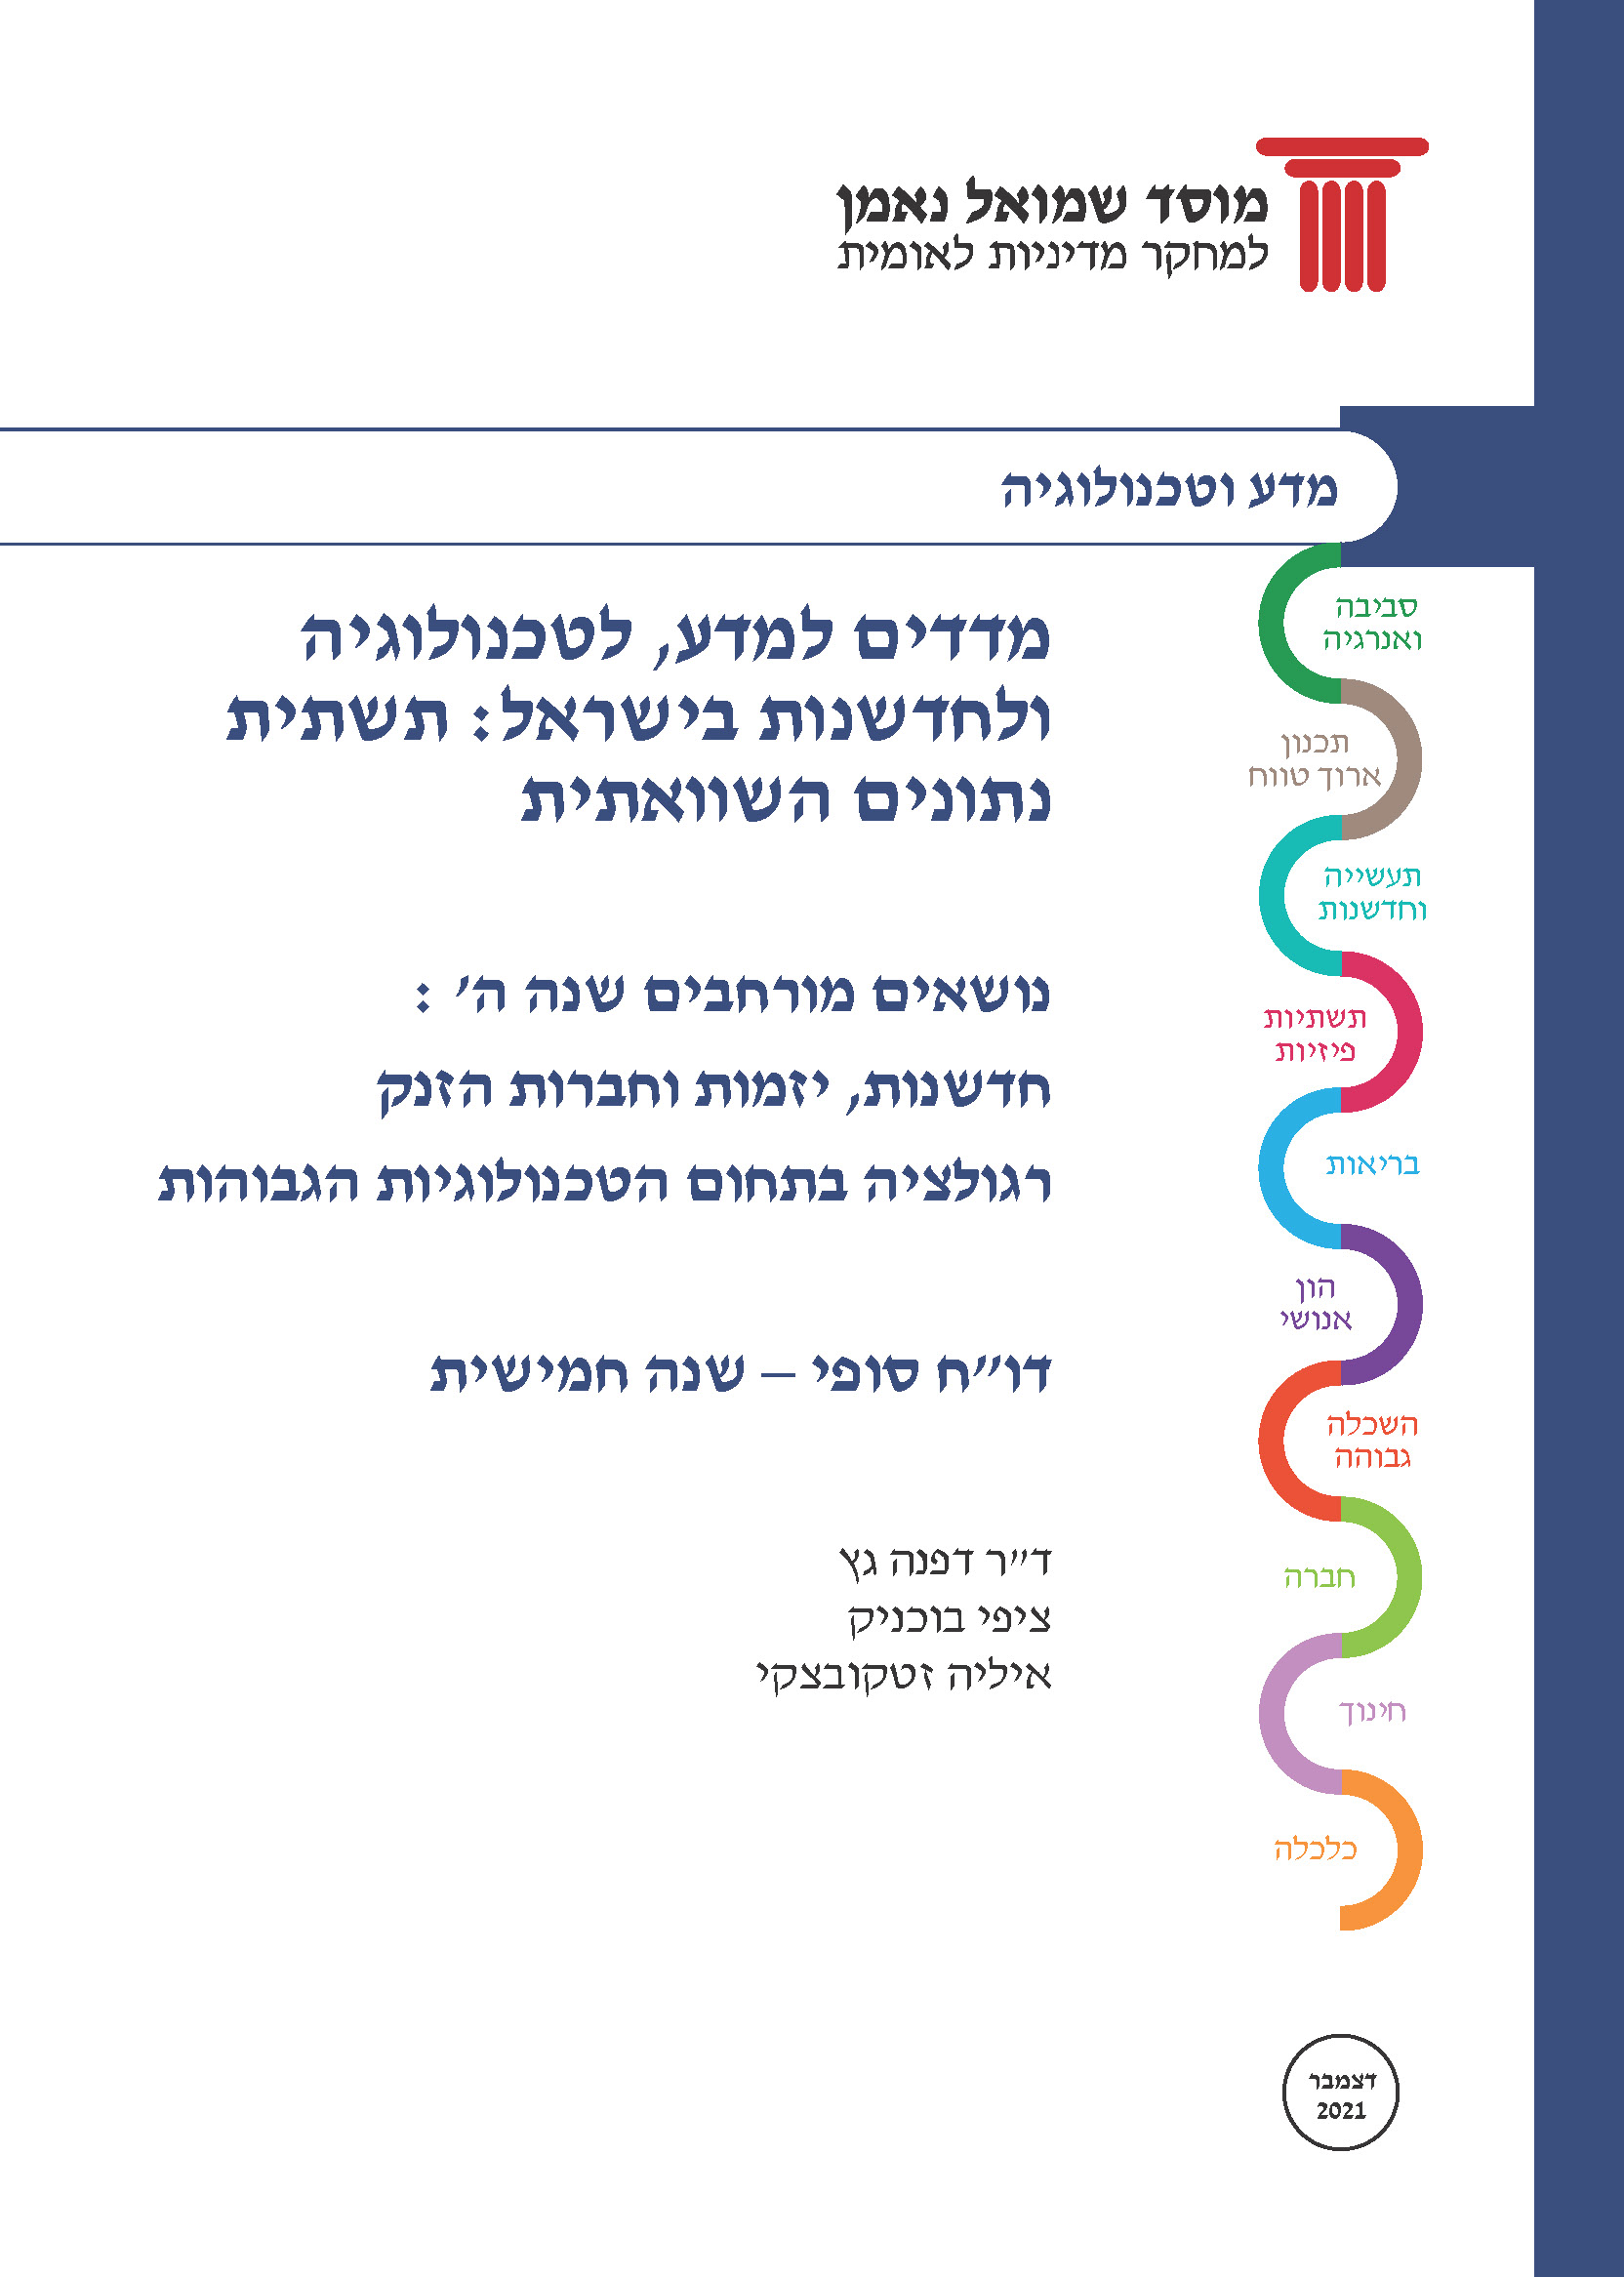 מדדים למדע, לטכנולוגיה ולחדשנות בישראל: תשתית נתונים השוואתית 2021 – חלק ב